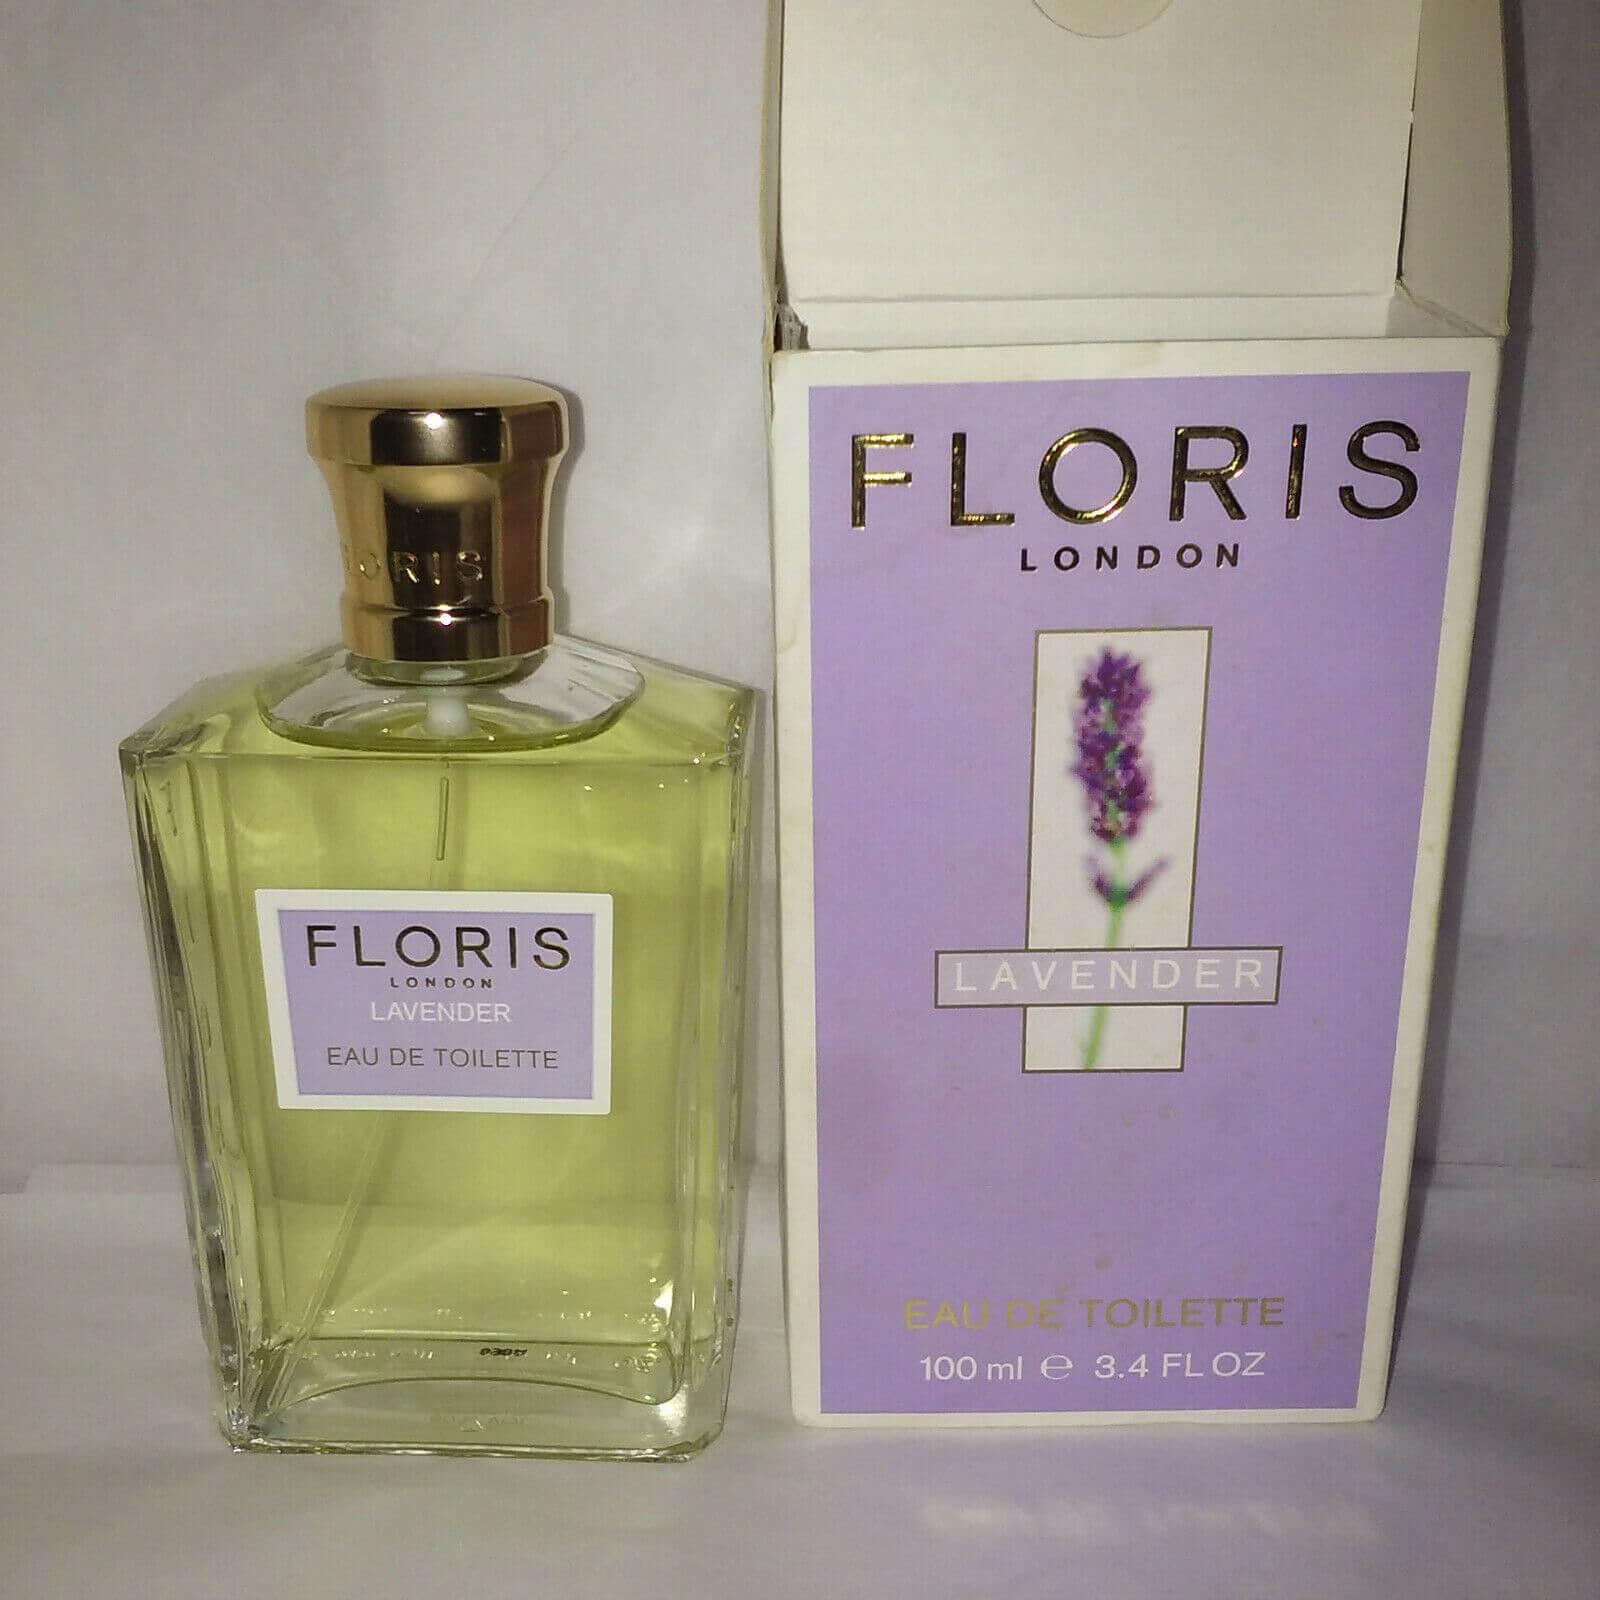 Floris London lavender eau de toilette - crabtree & evelyn